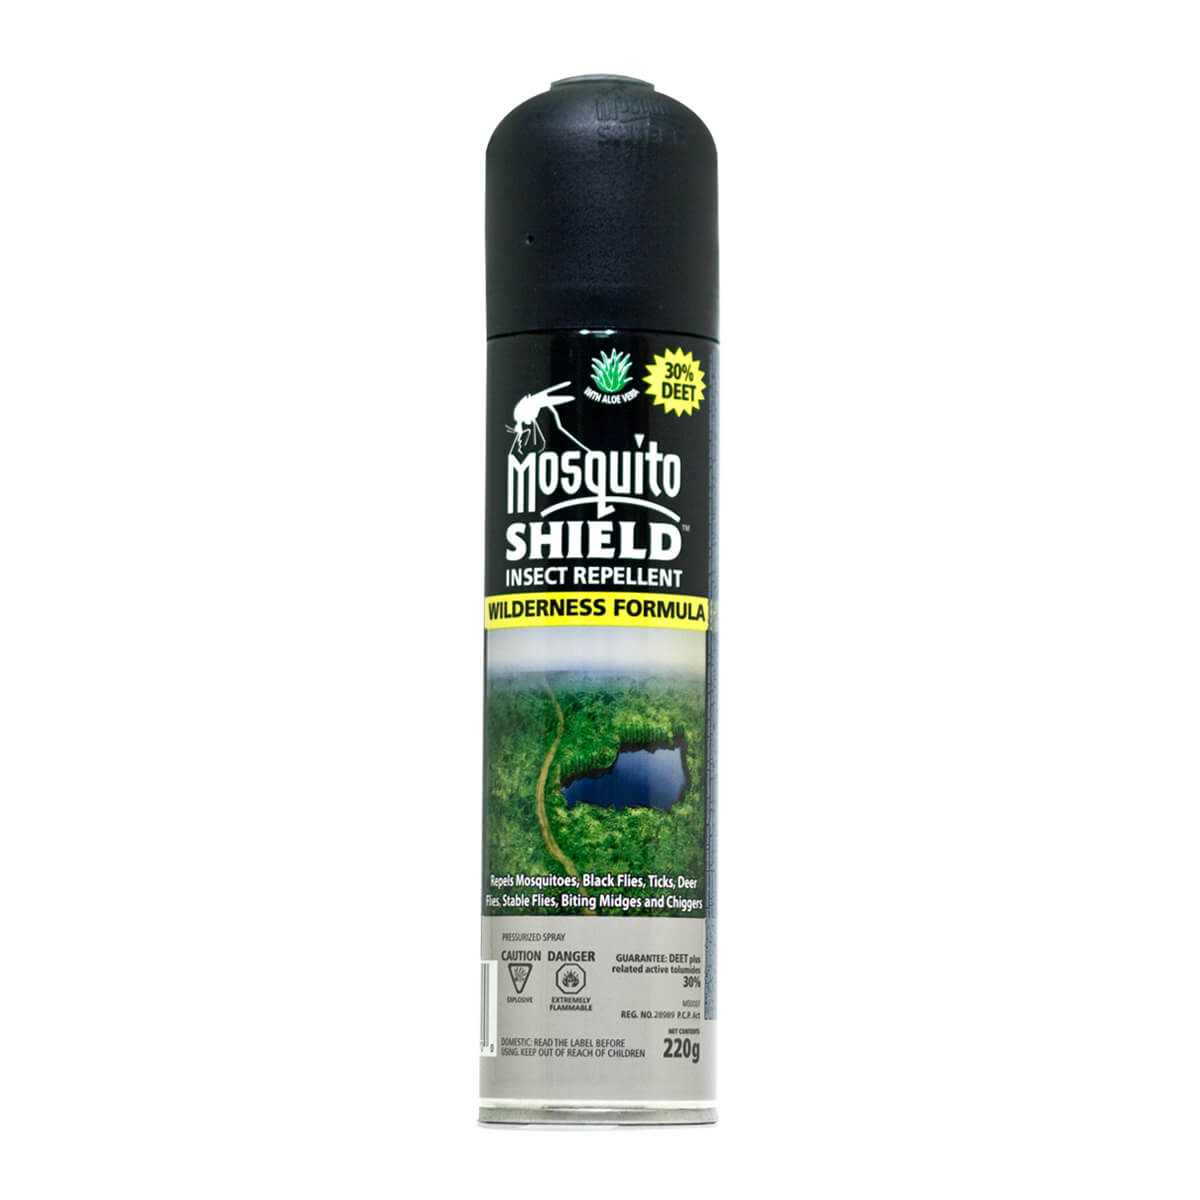 Mosquito Shield Wilderness Formula - 30% Deet 220 g